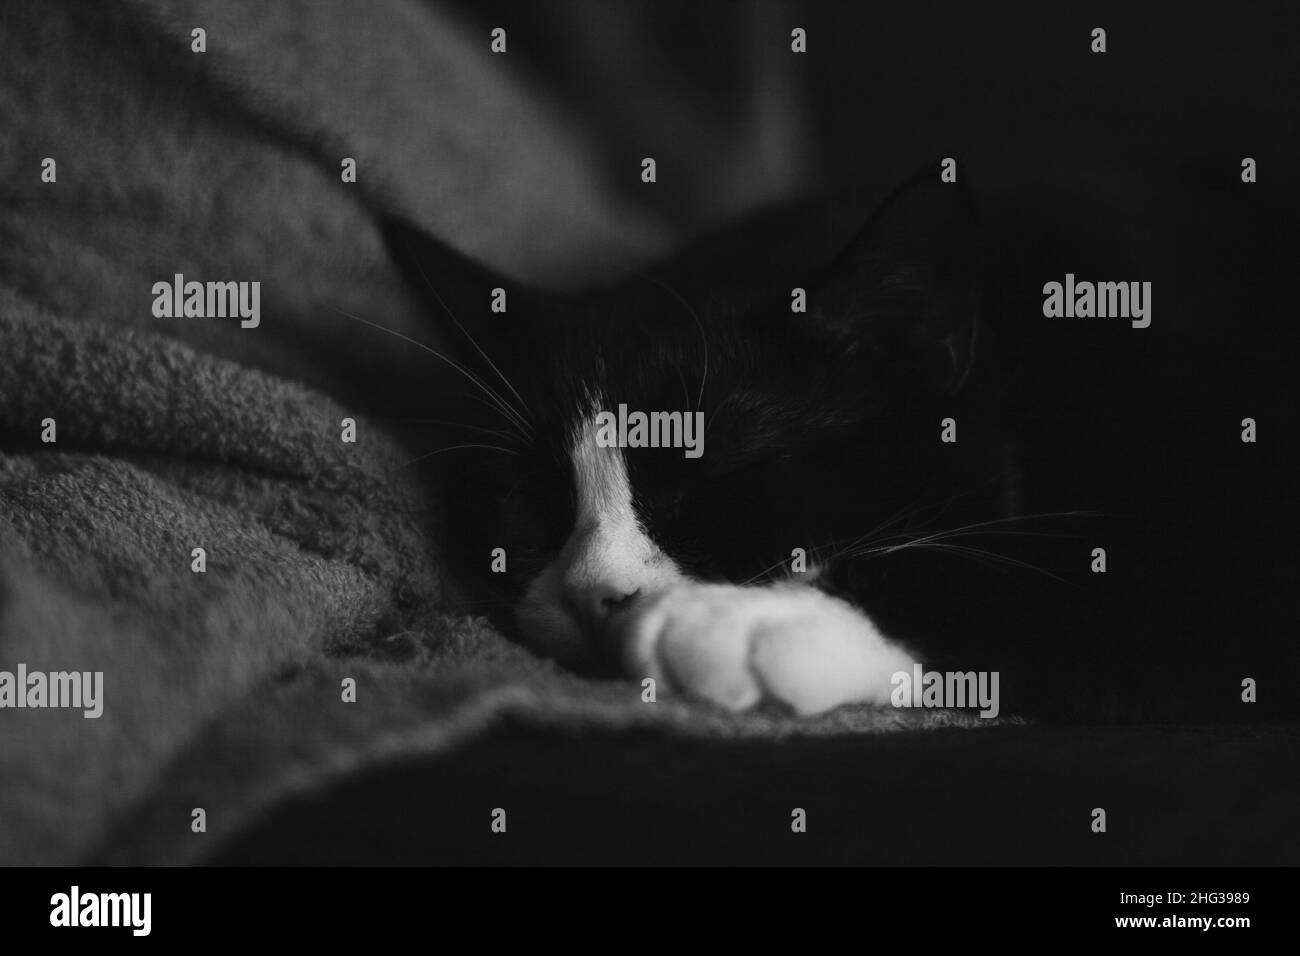 Un joli chat noir avec des pattes blanches est couché sur une couverture douce sur un plancher en bois Banque D'Images